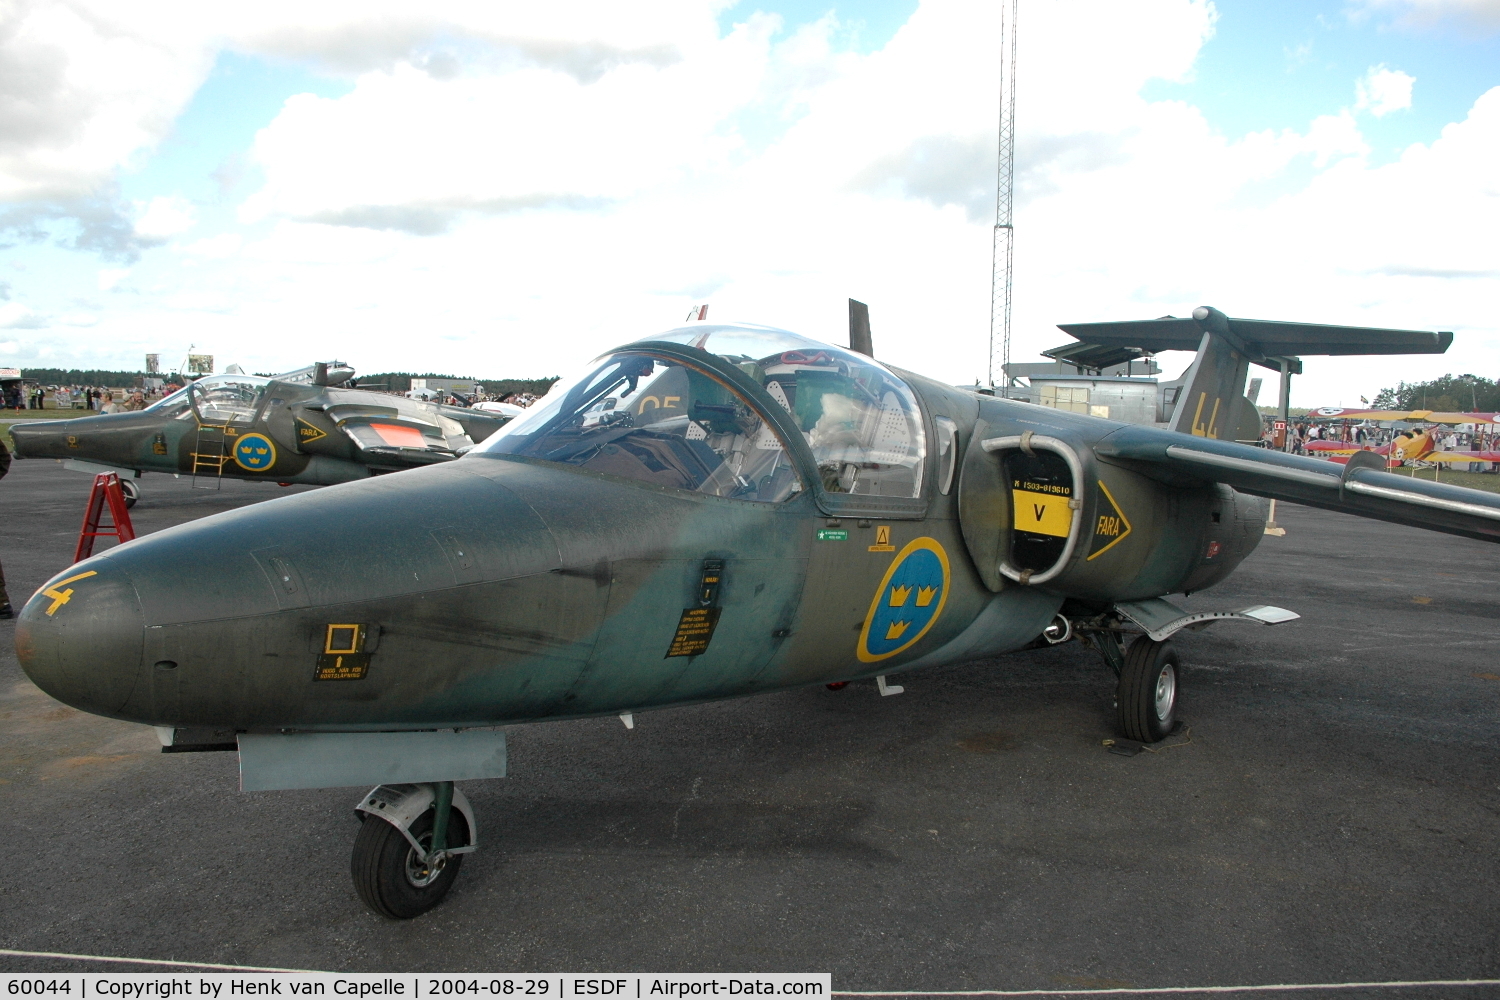 60044, Saab Sk.60B C/N 600-44, Saab Sk60B of the Swedish Air Force at Ronneby Air Base, Sweden.